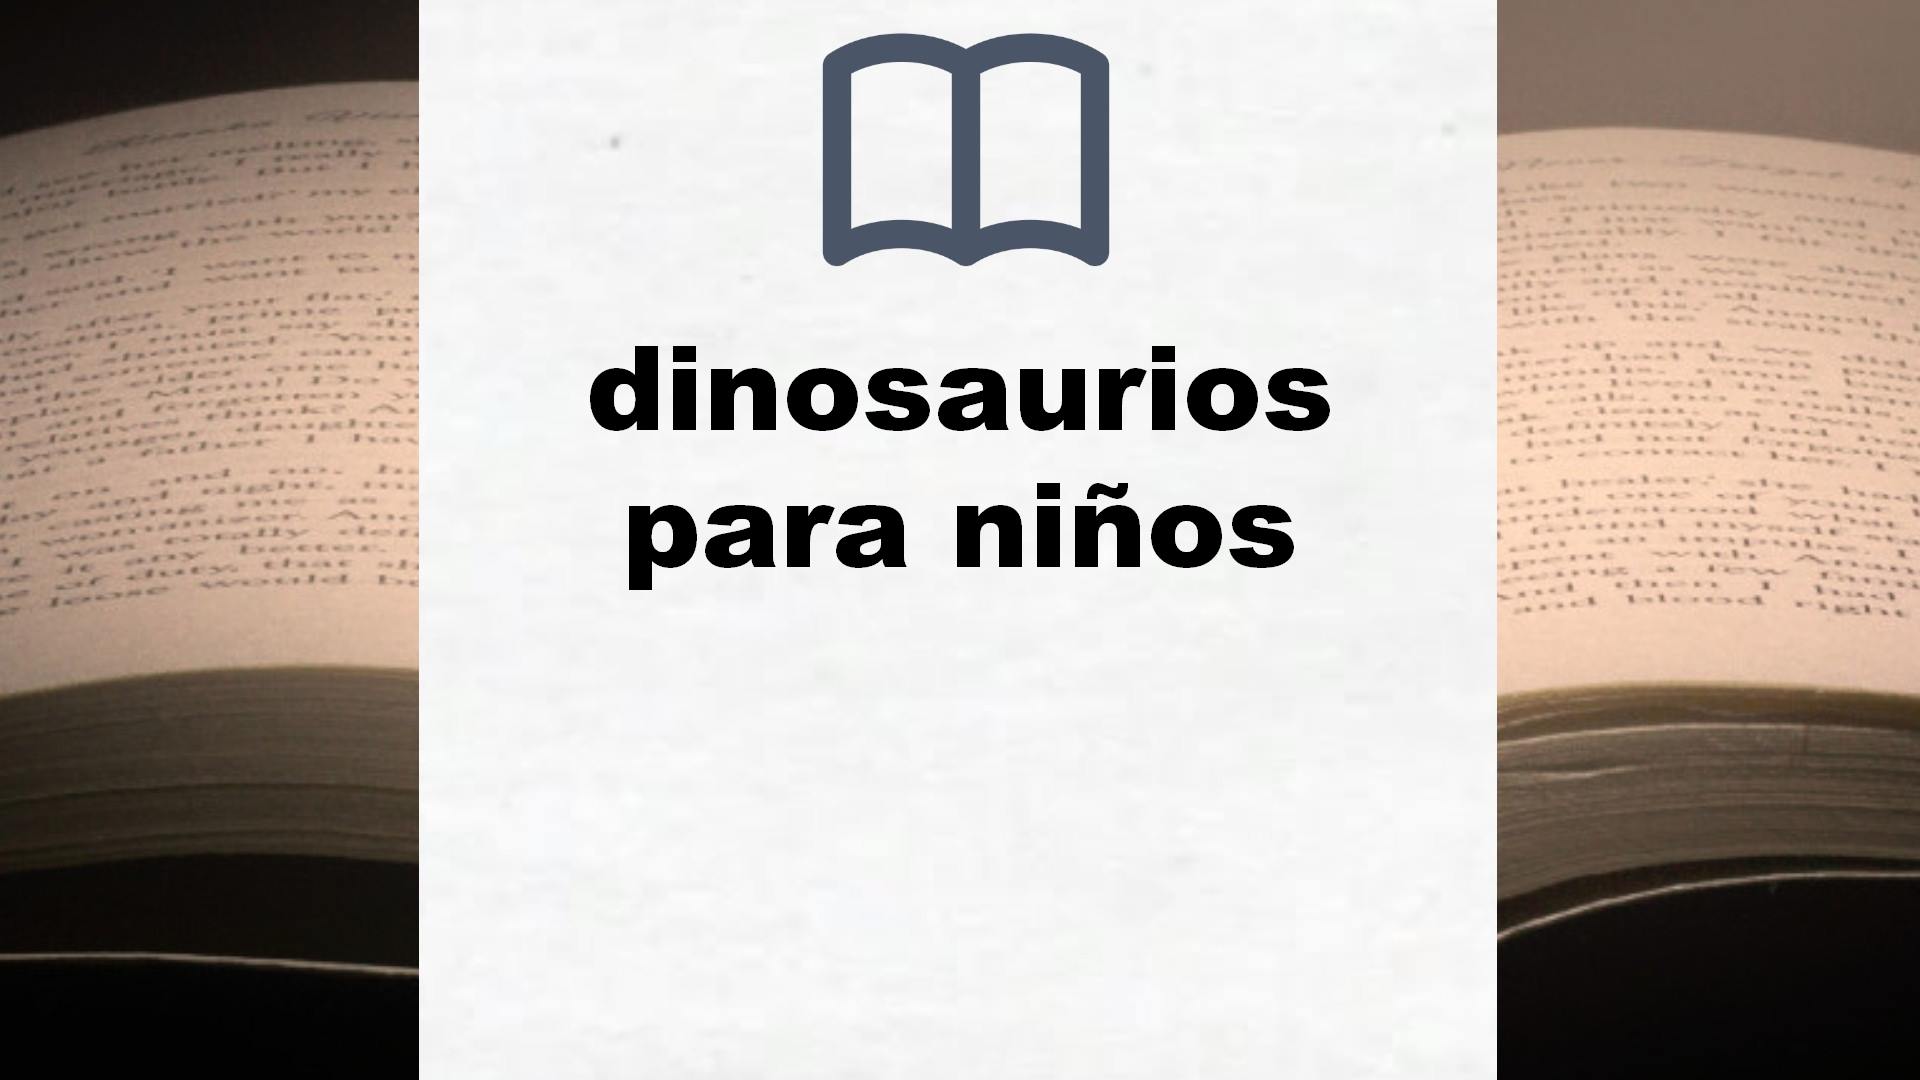 Libros sobre dinosaurios para niños